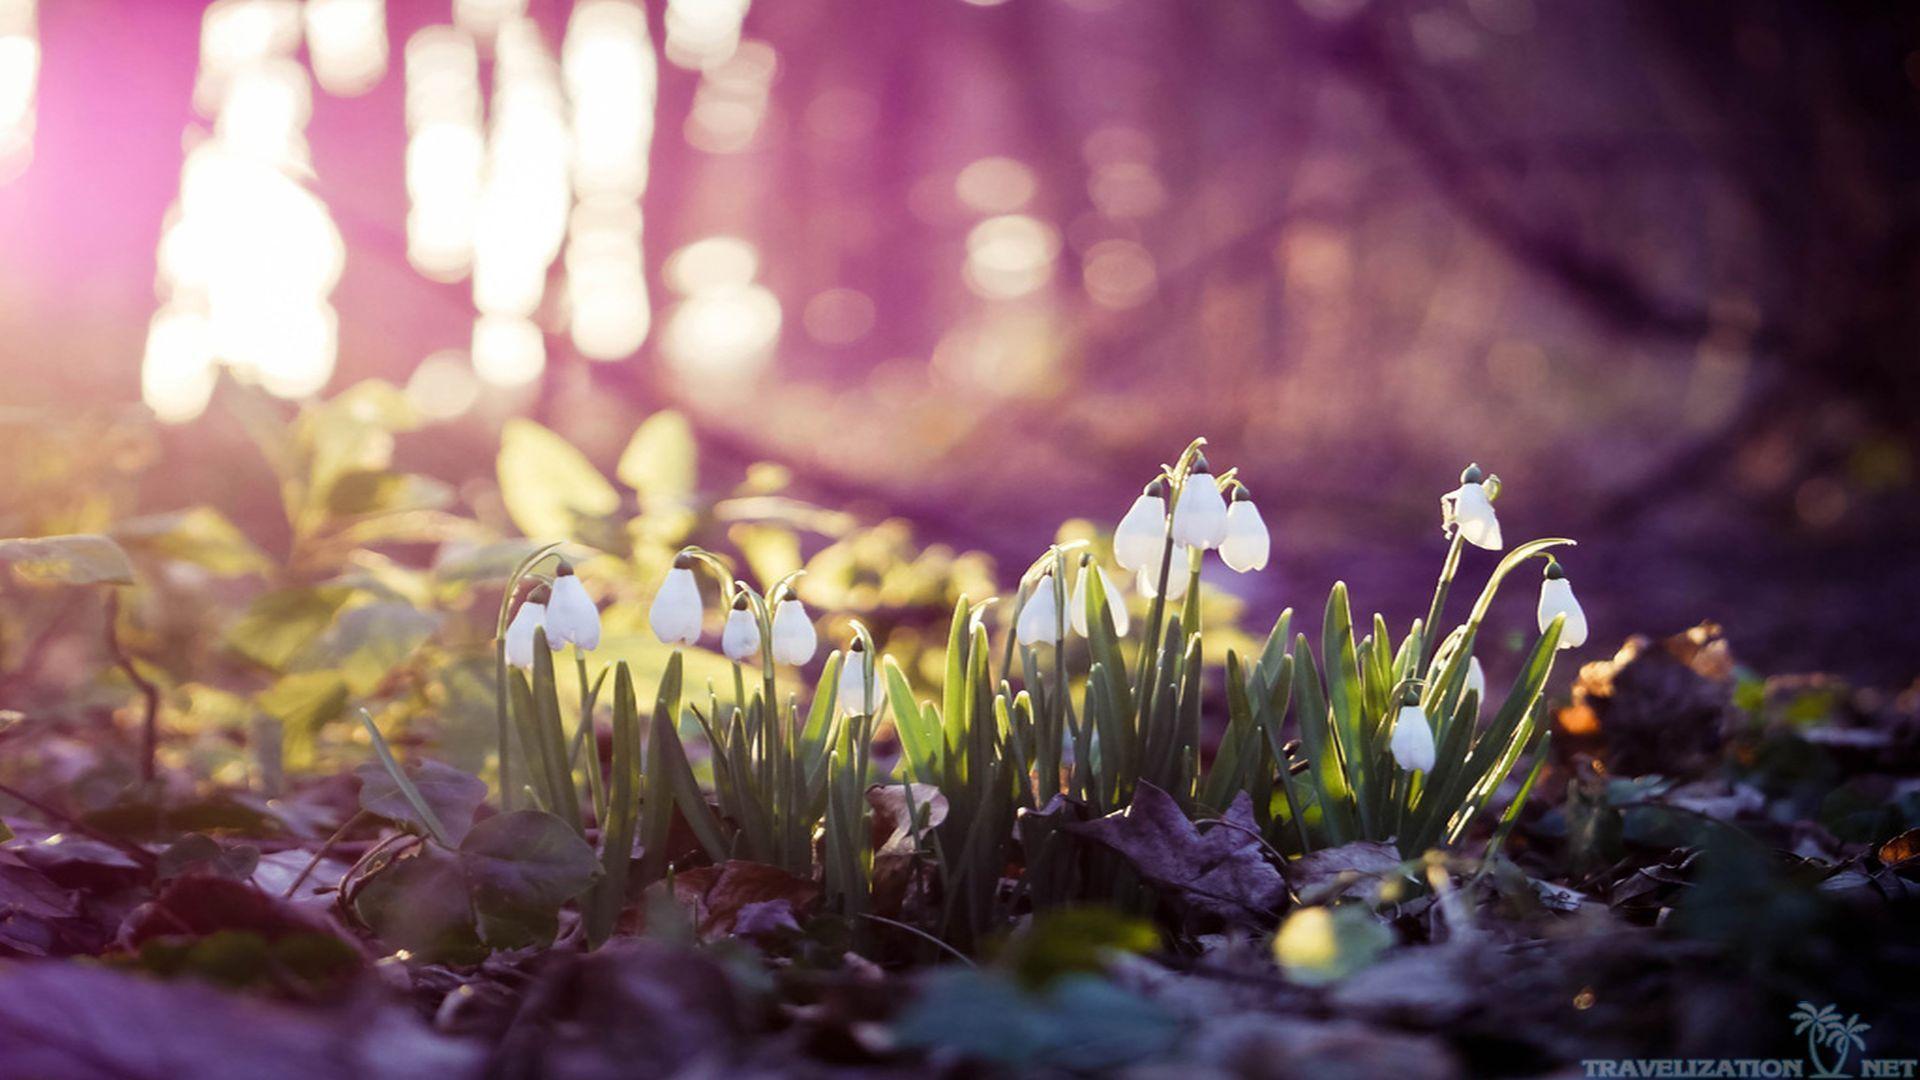 Tận hưởng không khí mùa xuân sớm với những hình nền đẹp tuyệt vời. Với những gam màu tươi sáng và hình ảnh ngộ nghĩnh, các bức hình nền mùa xuân sớm sẽ đưa bạn đến với một thế giới đầy màu sắc và sinh động.